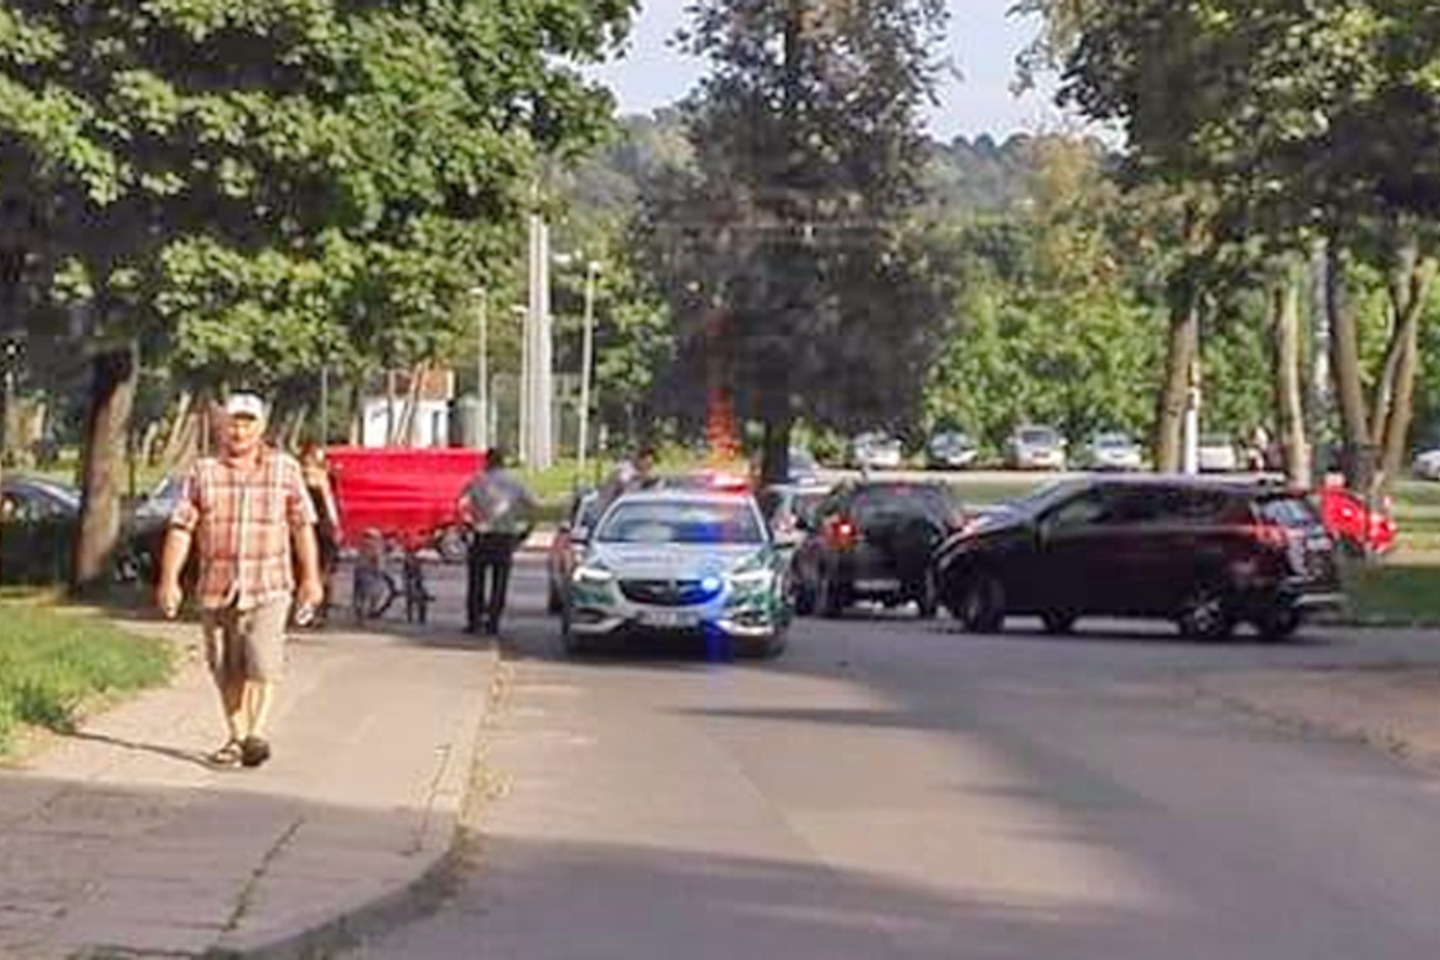  Vilniaus daugiabučių kiemuose automobilis kliudė 11-metį dviratininką.<br> Įvykio liudytojos Giedrės nuotr.